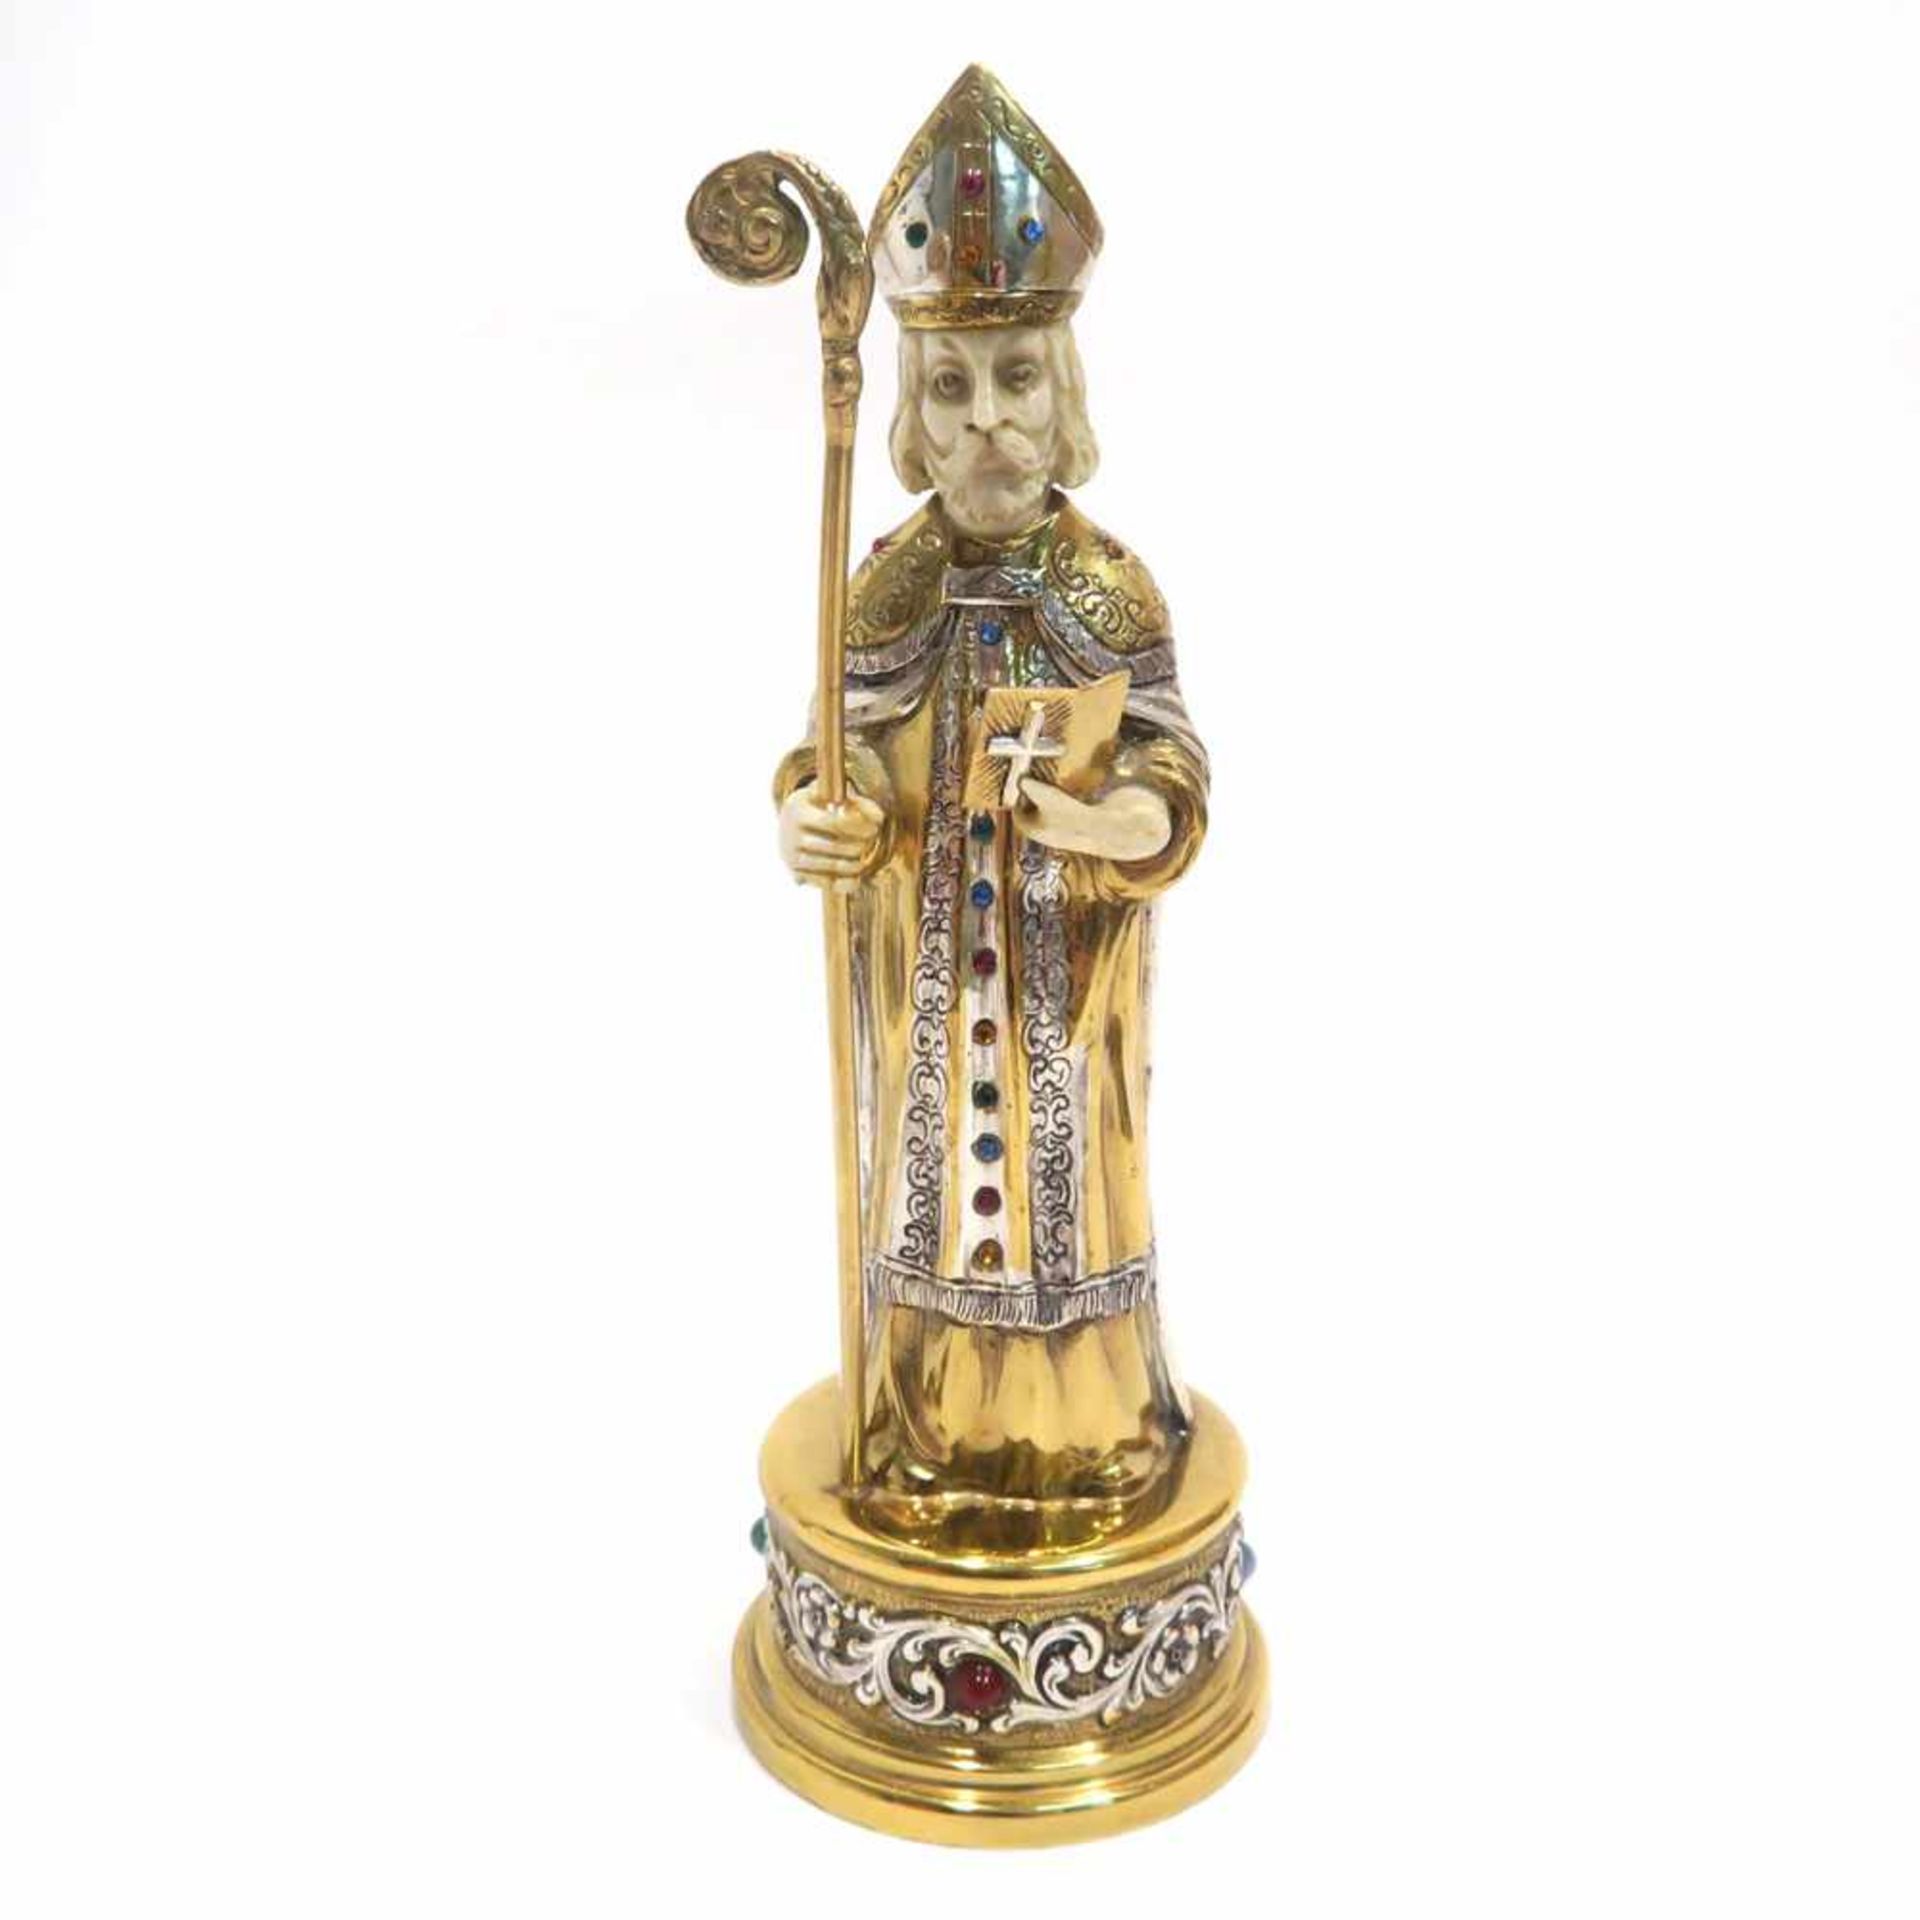 Schachfigur "Bischof"Deutsch. Silber, tlw. vergoldet, Elfenbein, farbige Glassteine. Figur eines